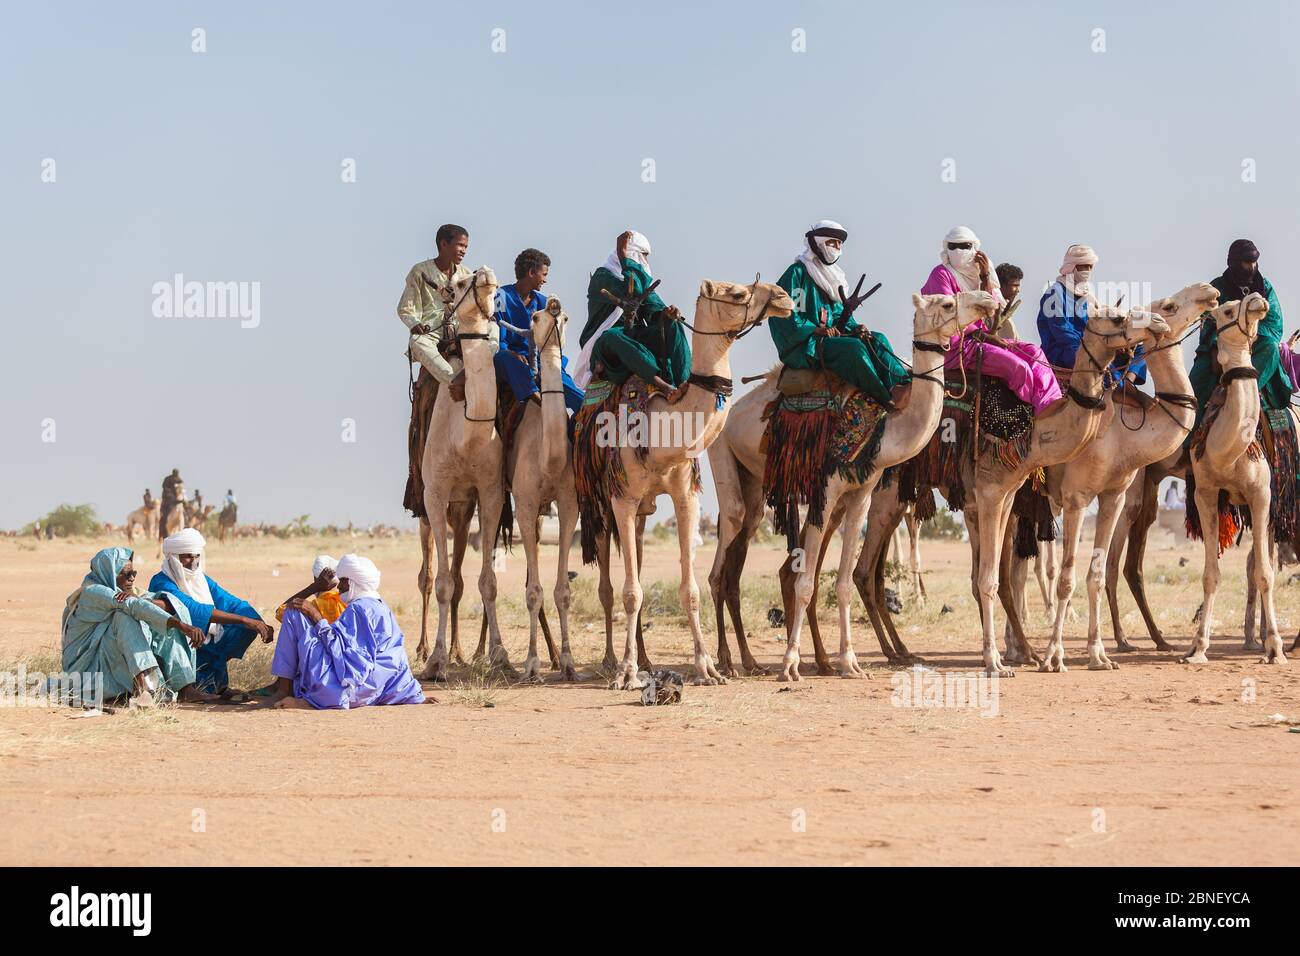 Ingall, Nige Curee Vente festivalr: tuareg gens dans des vêtements traditionnels assis sur des chameaux dans le désert Banque D'Images